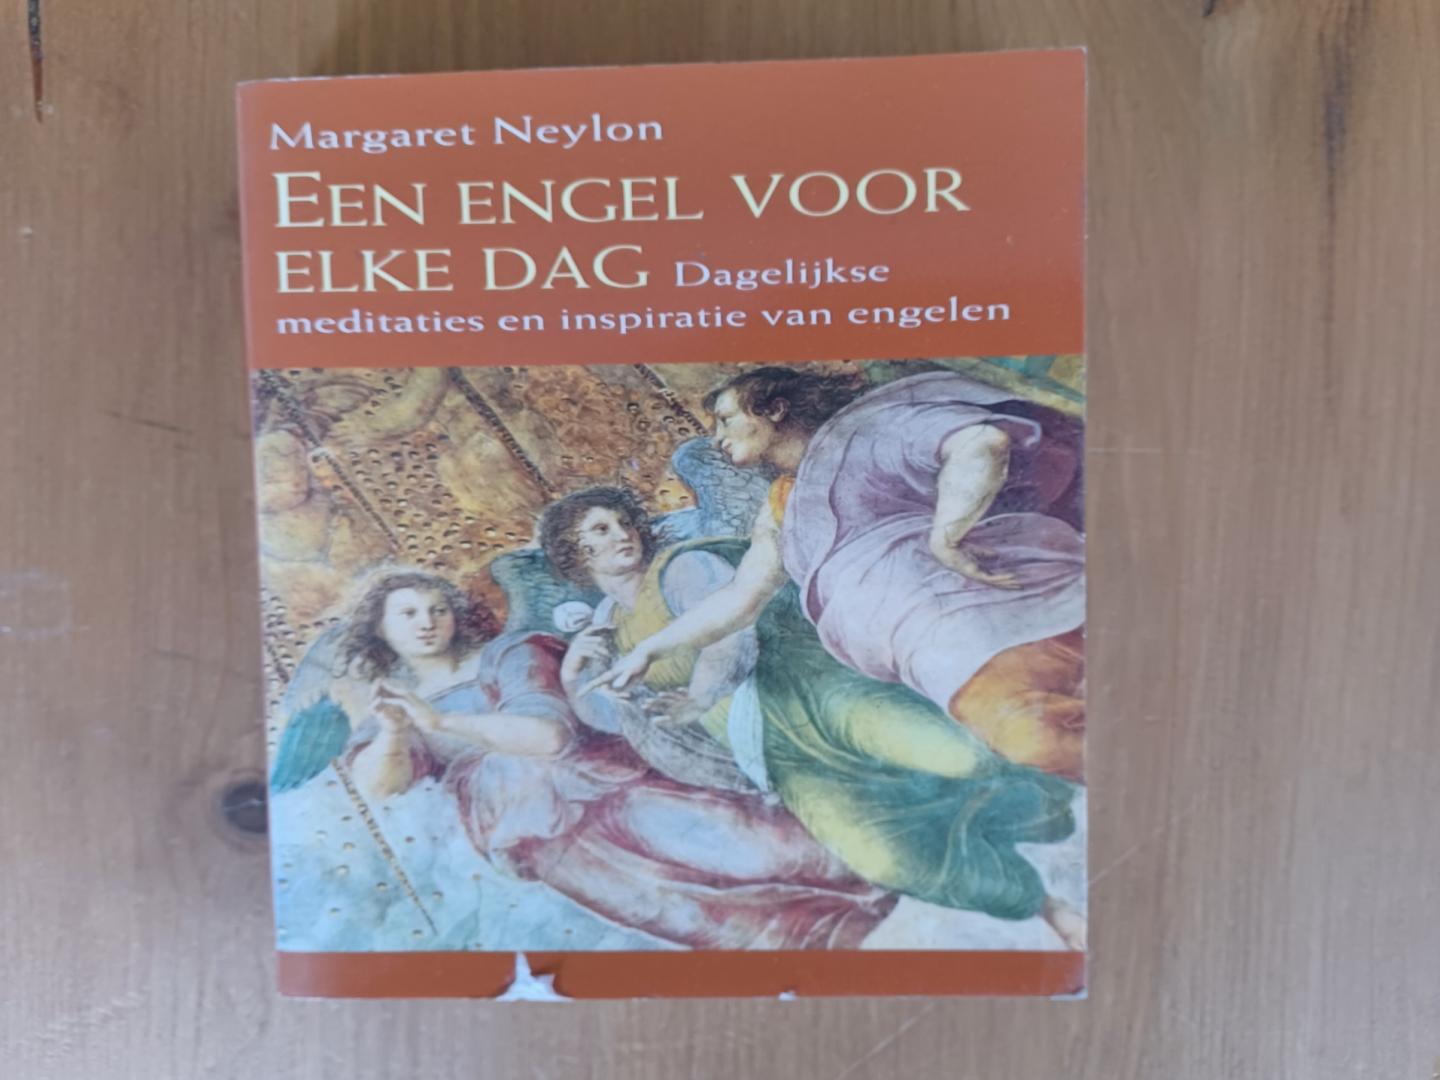 Neylon, Margaret - Een engel voor elke dag / dagelijkse meditaties en inspiratie van engelen